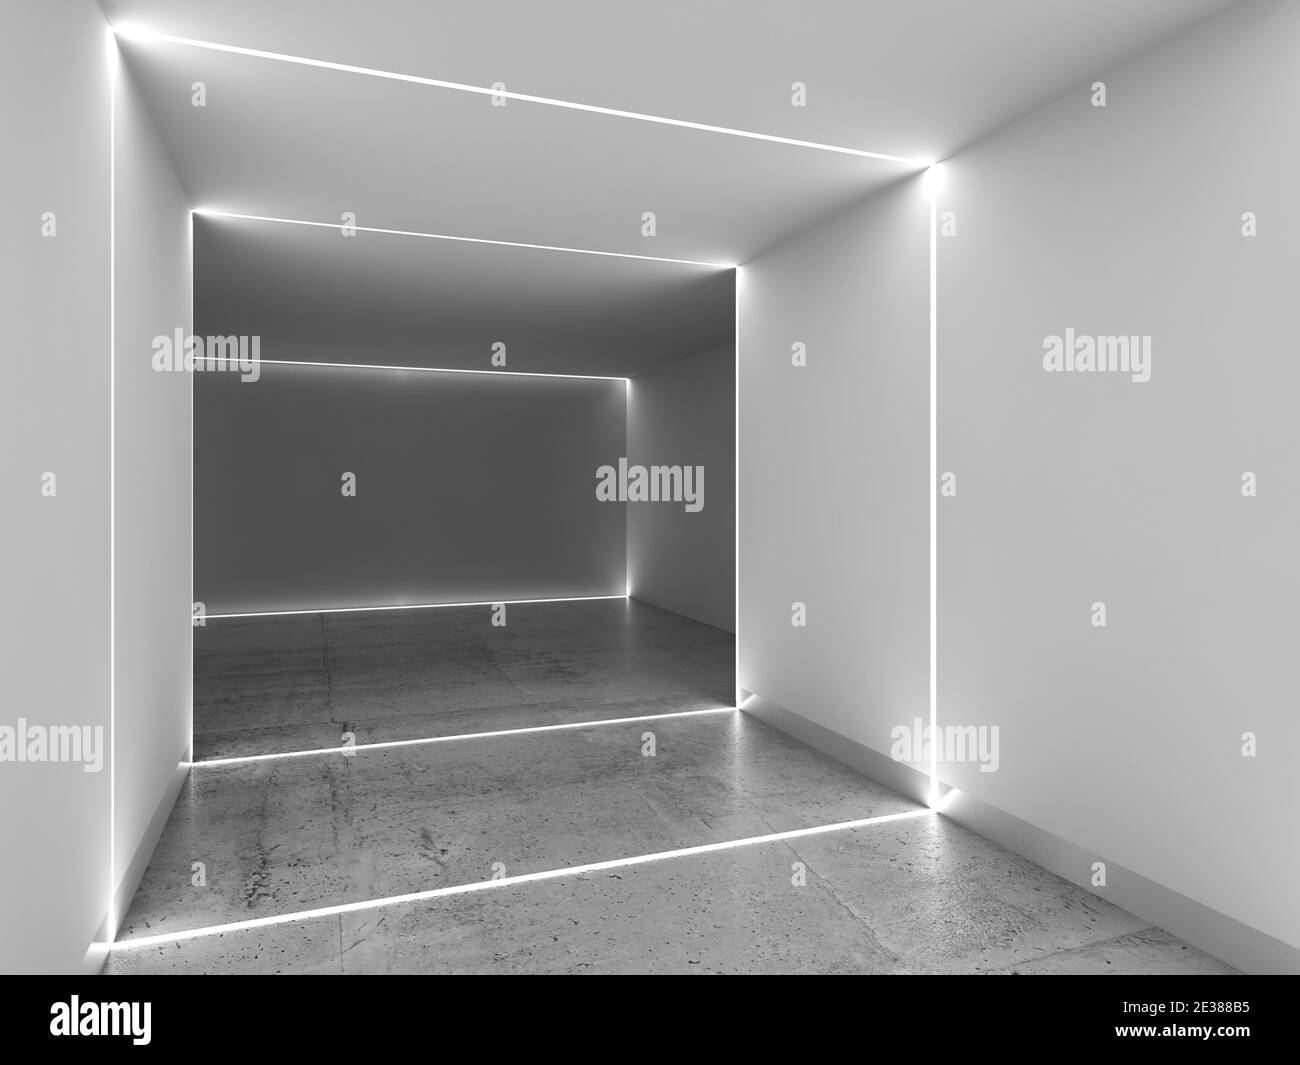 Luz led interior Imágenes de stock en blanco y negro - Alamy